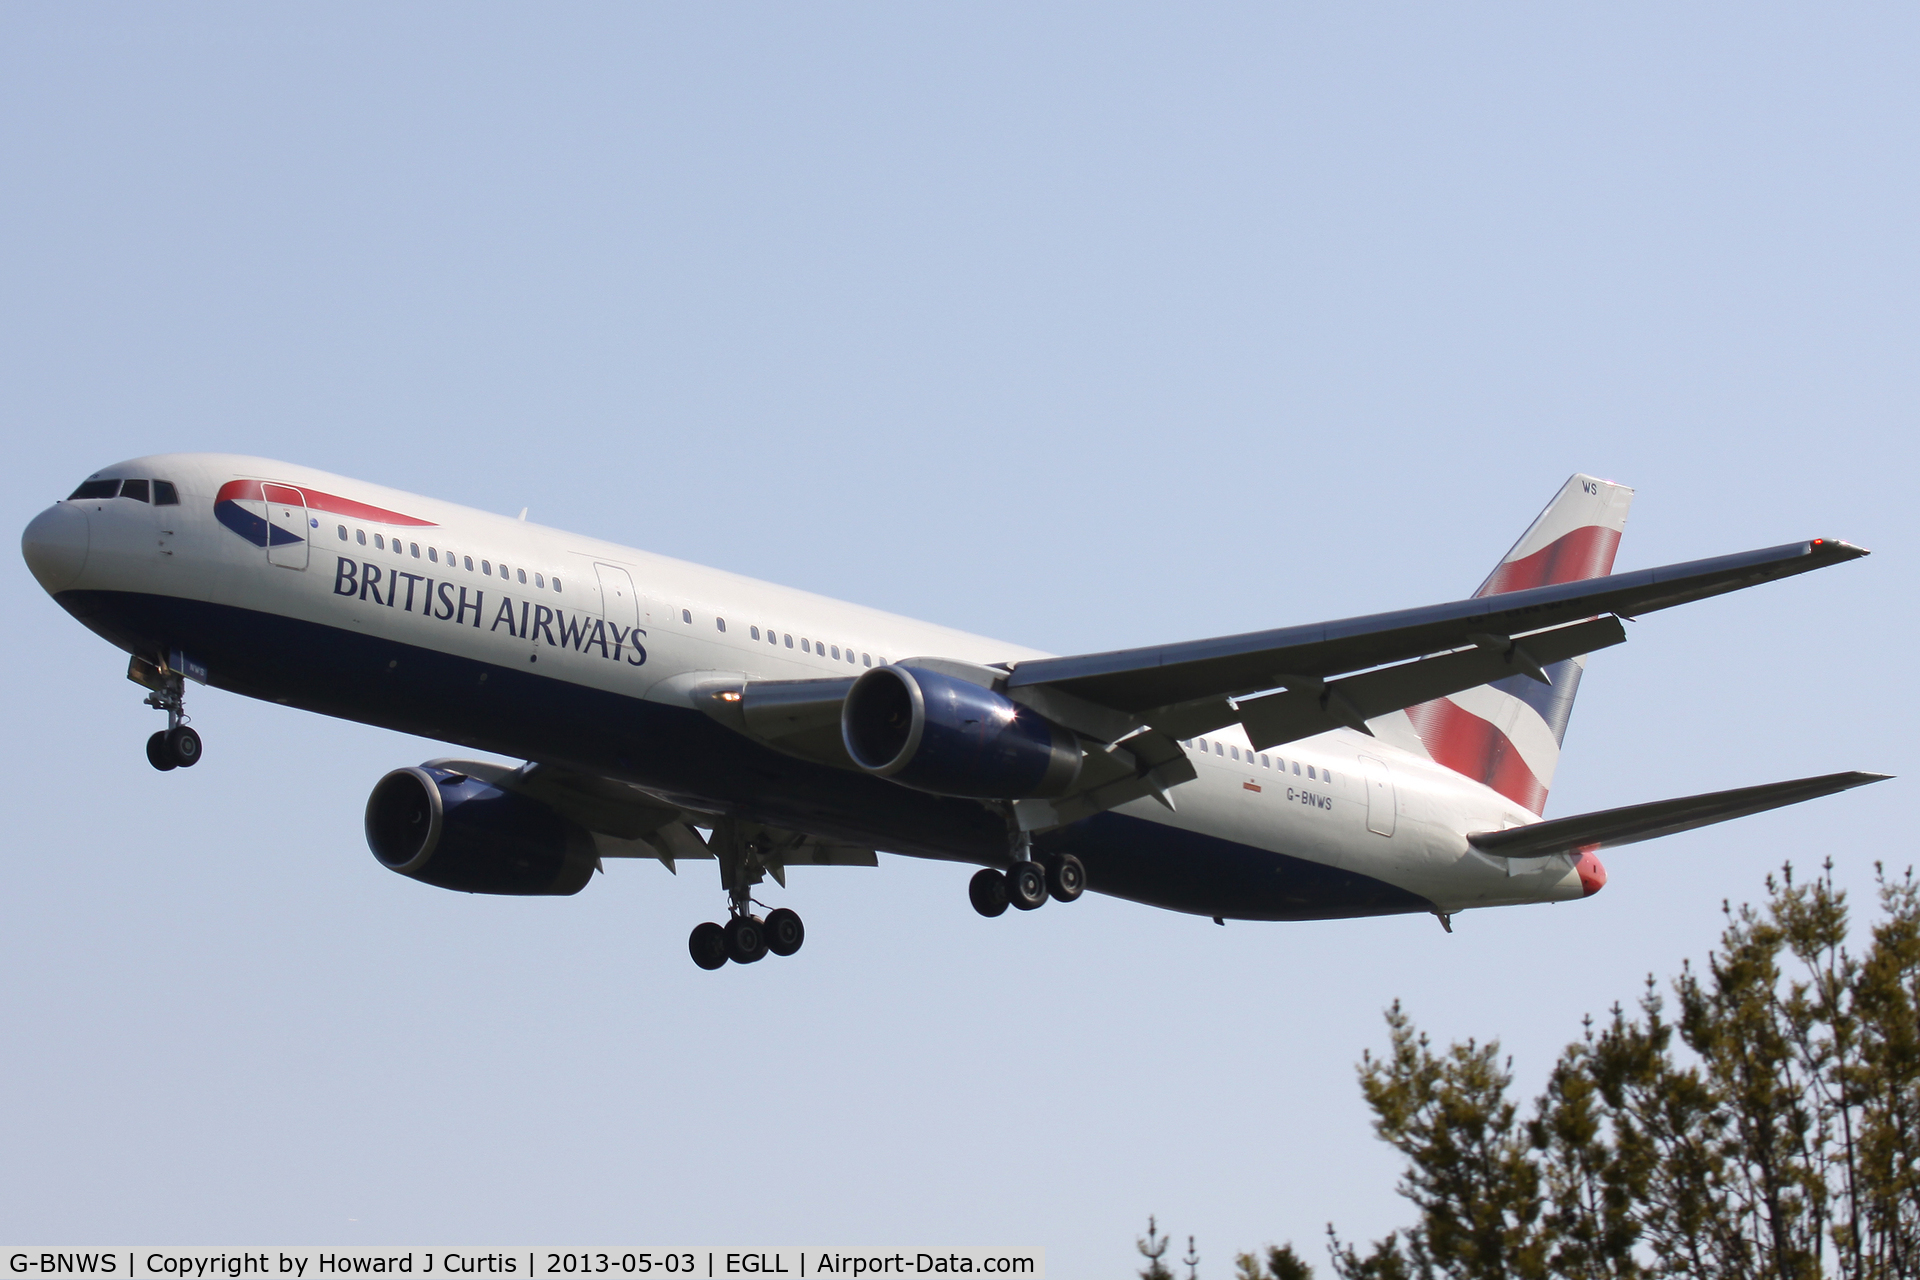 G-BNWS, 1992 Boeing 767-336 C/N 25826, British Airways, on finals for runway 27L.